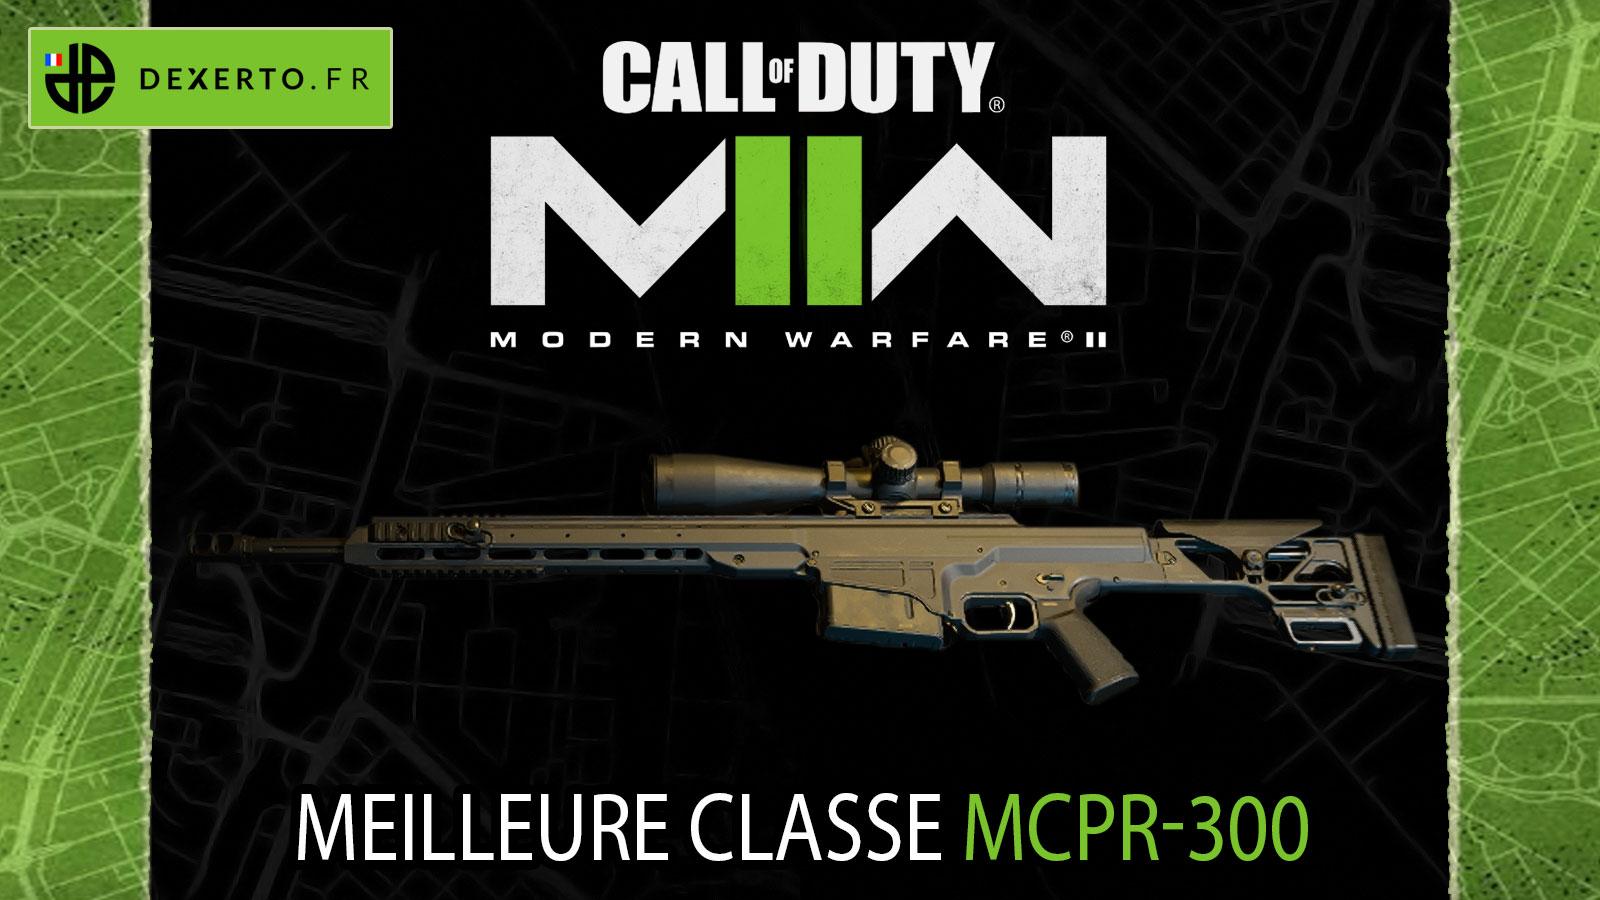 MCPR-300 Modern Warfare 2